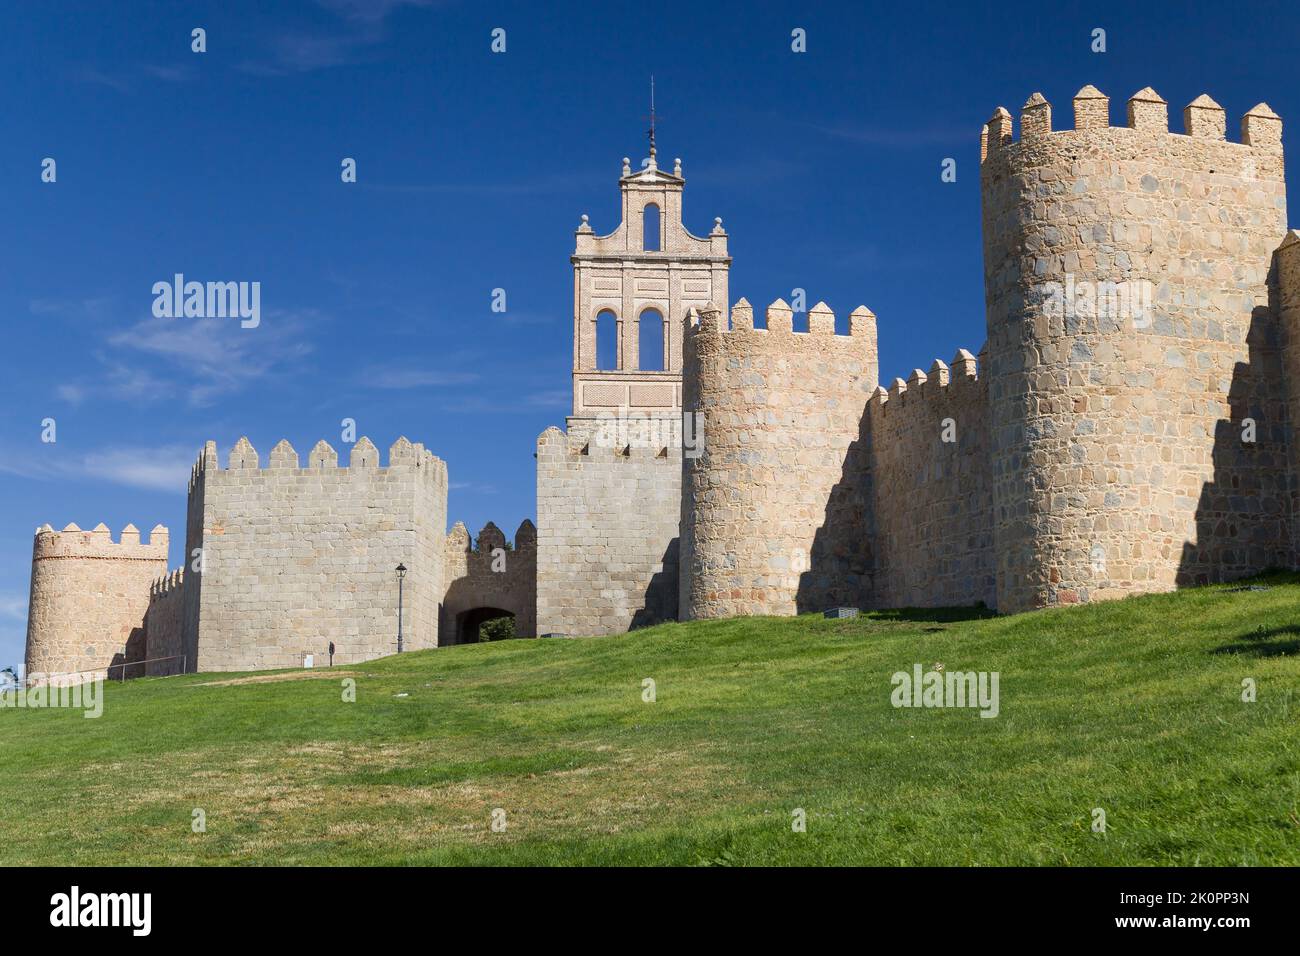 Espadana del Carmen and Walls of Avila, Spain. Stock Photo